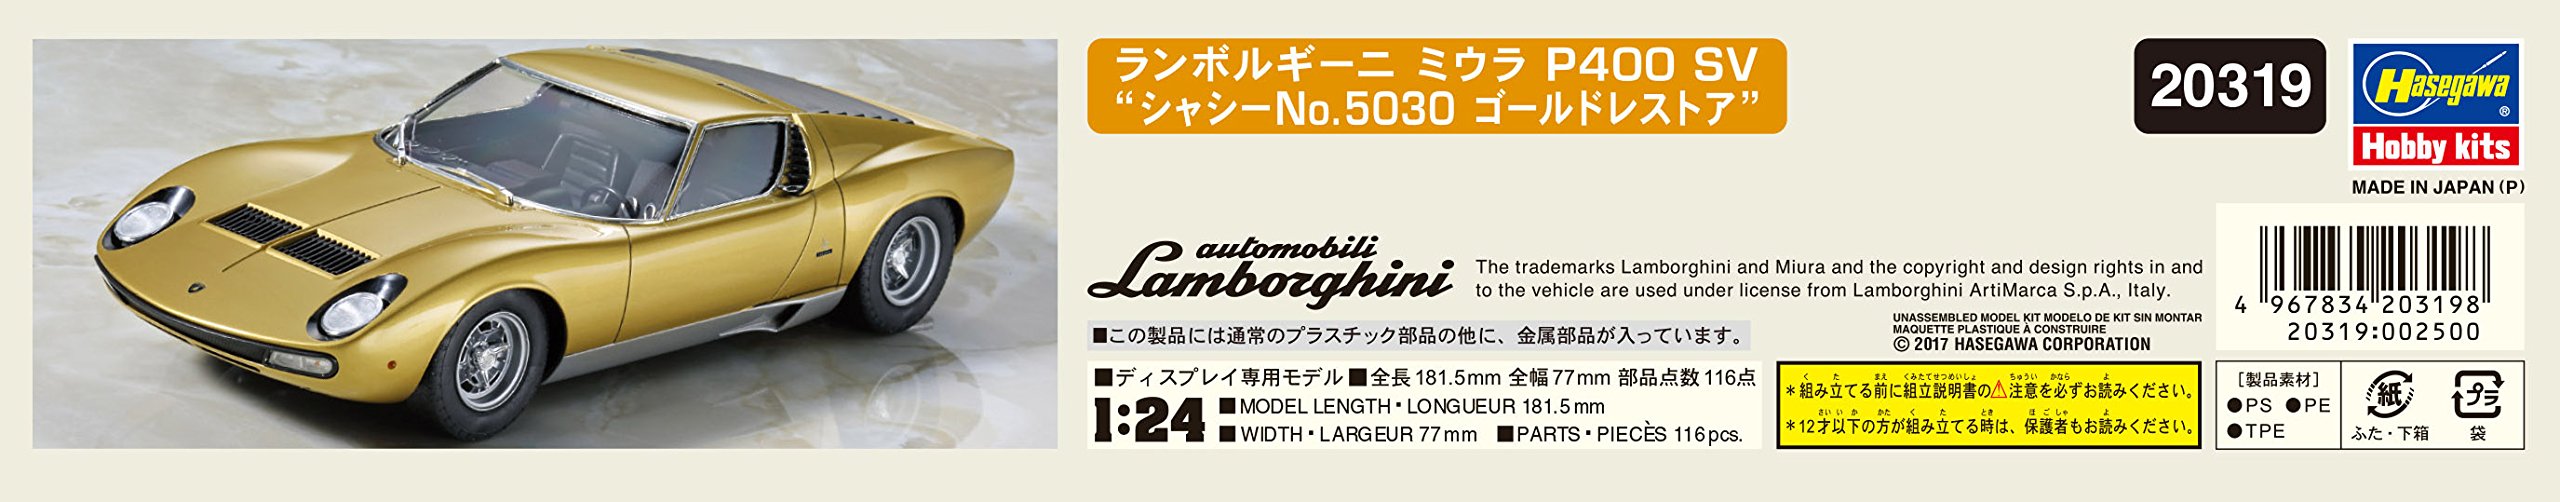 HASEGAWA 20319 Lamborghini Miura P400 Sv 'Chassis No.5030' Gold Restore 1/24 Scale Kit